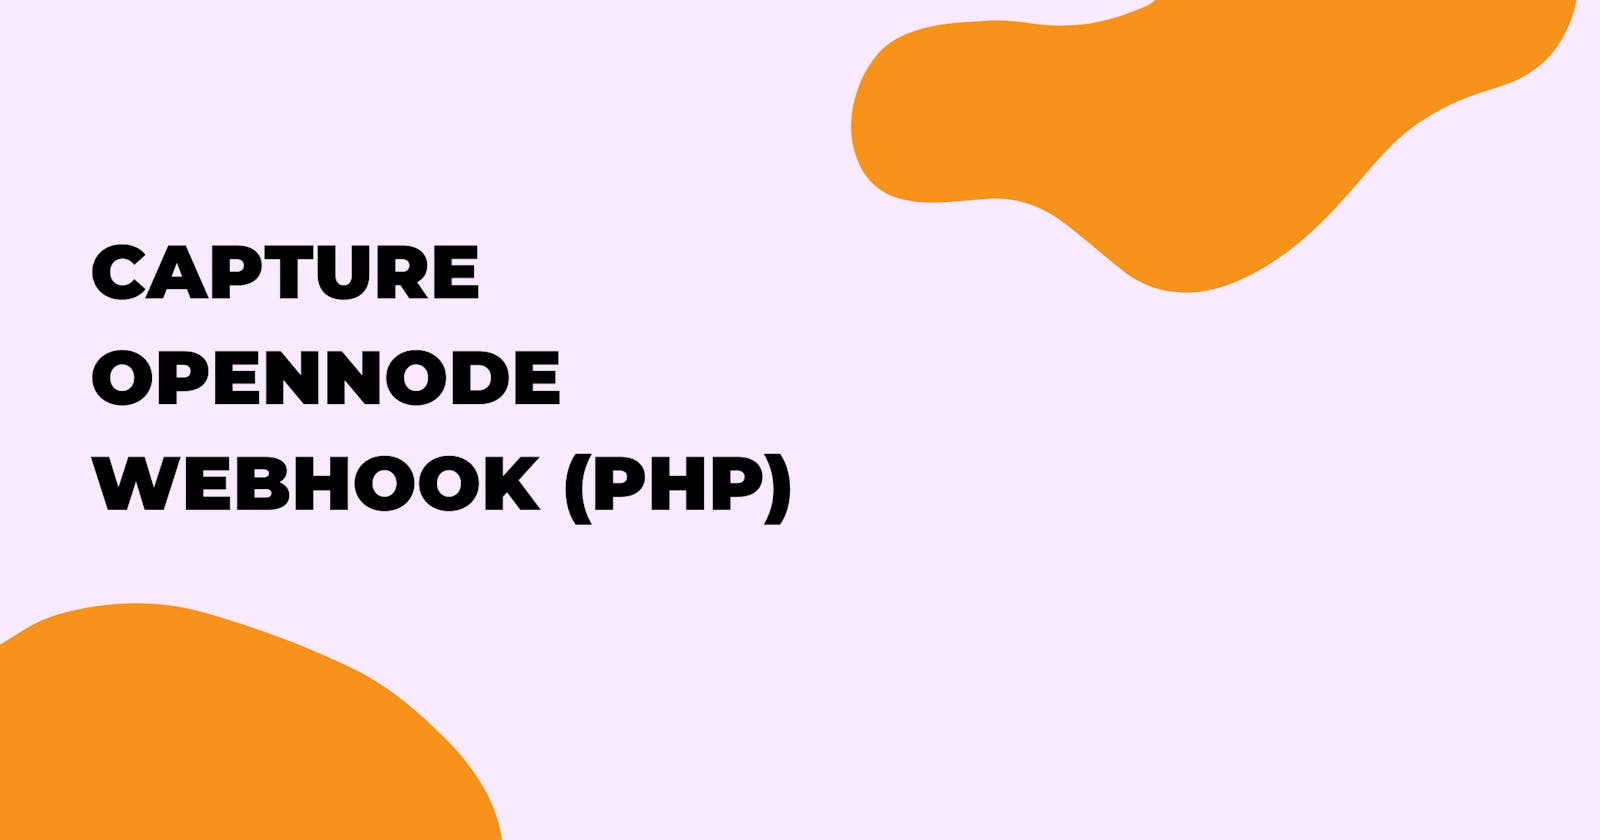 How I captured OpenNode Webhook (PHP)